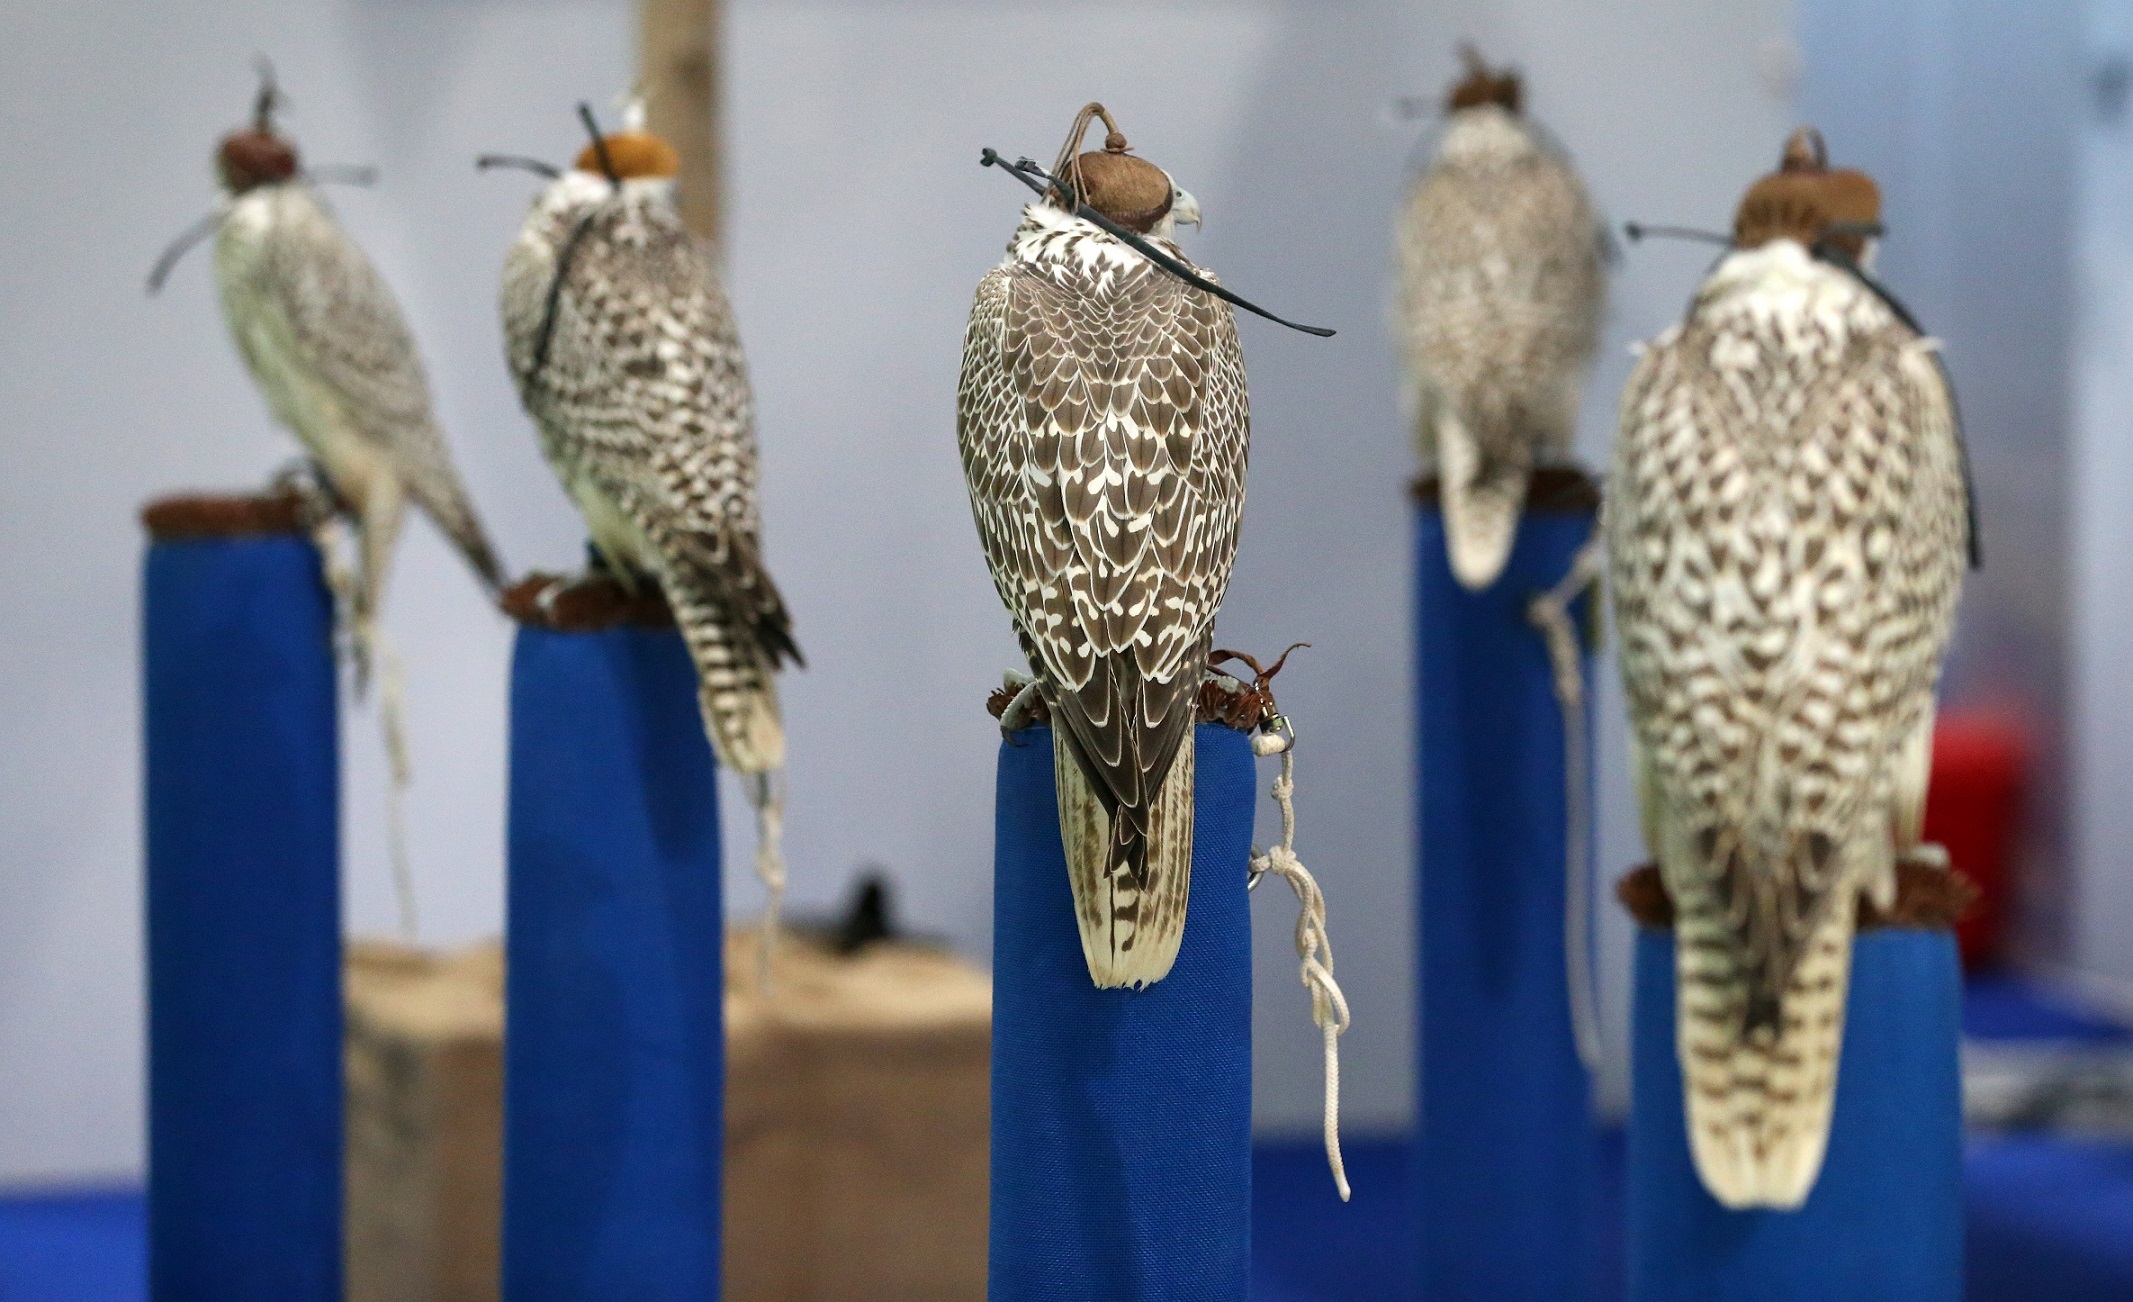    معرض أبوظبي للصيد يُعلن عن مُسابقة أجمل صقور العالم المُكاثرة في الأسر